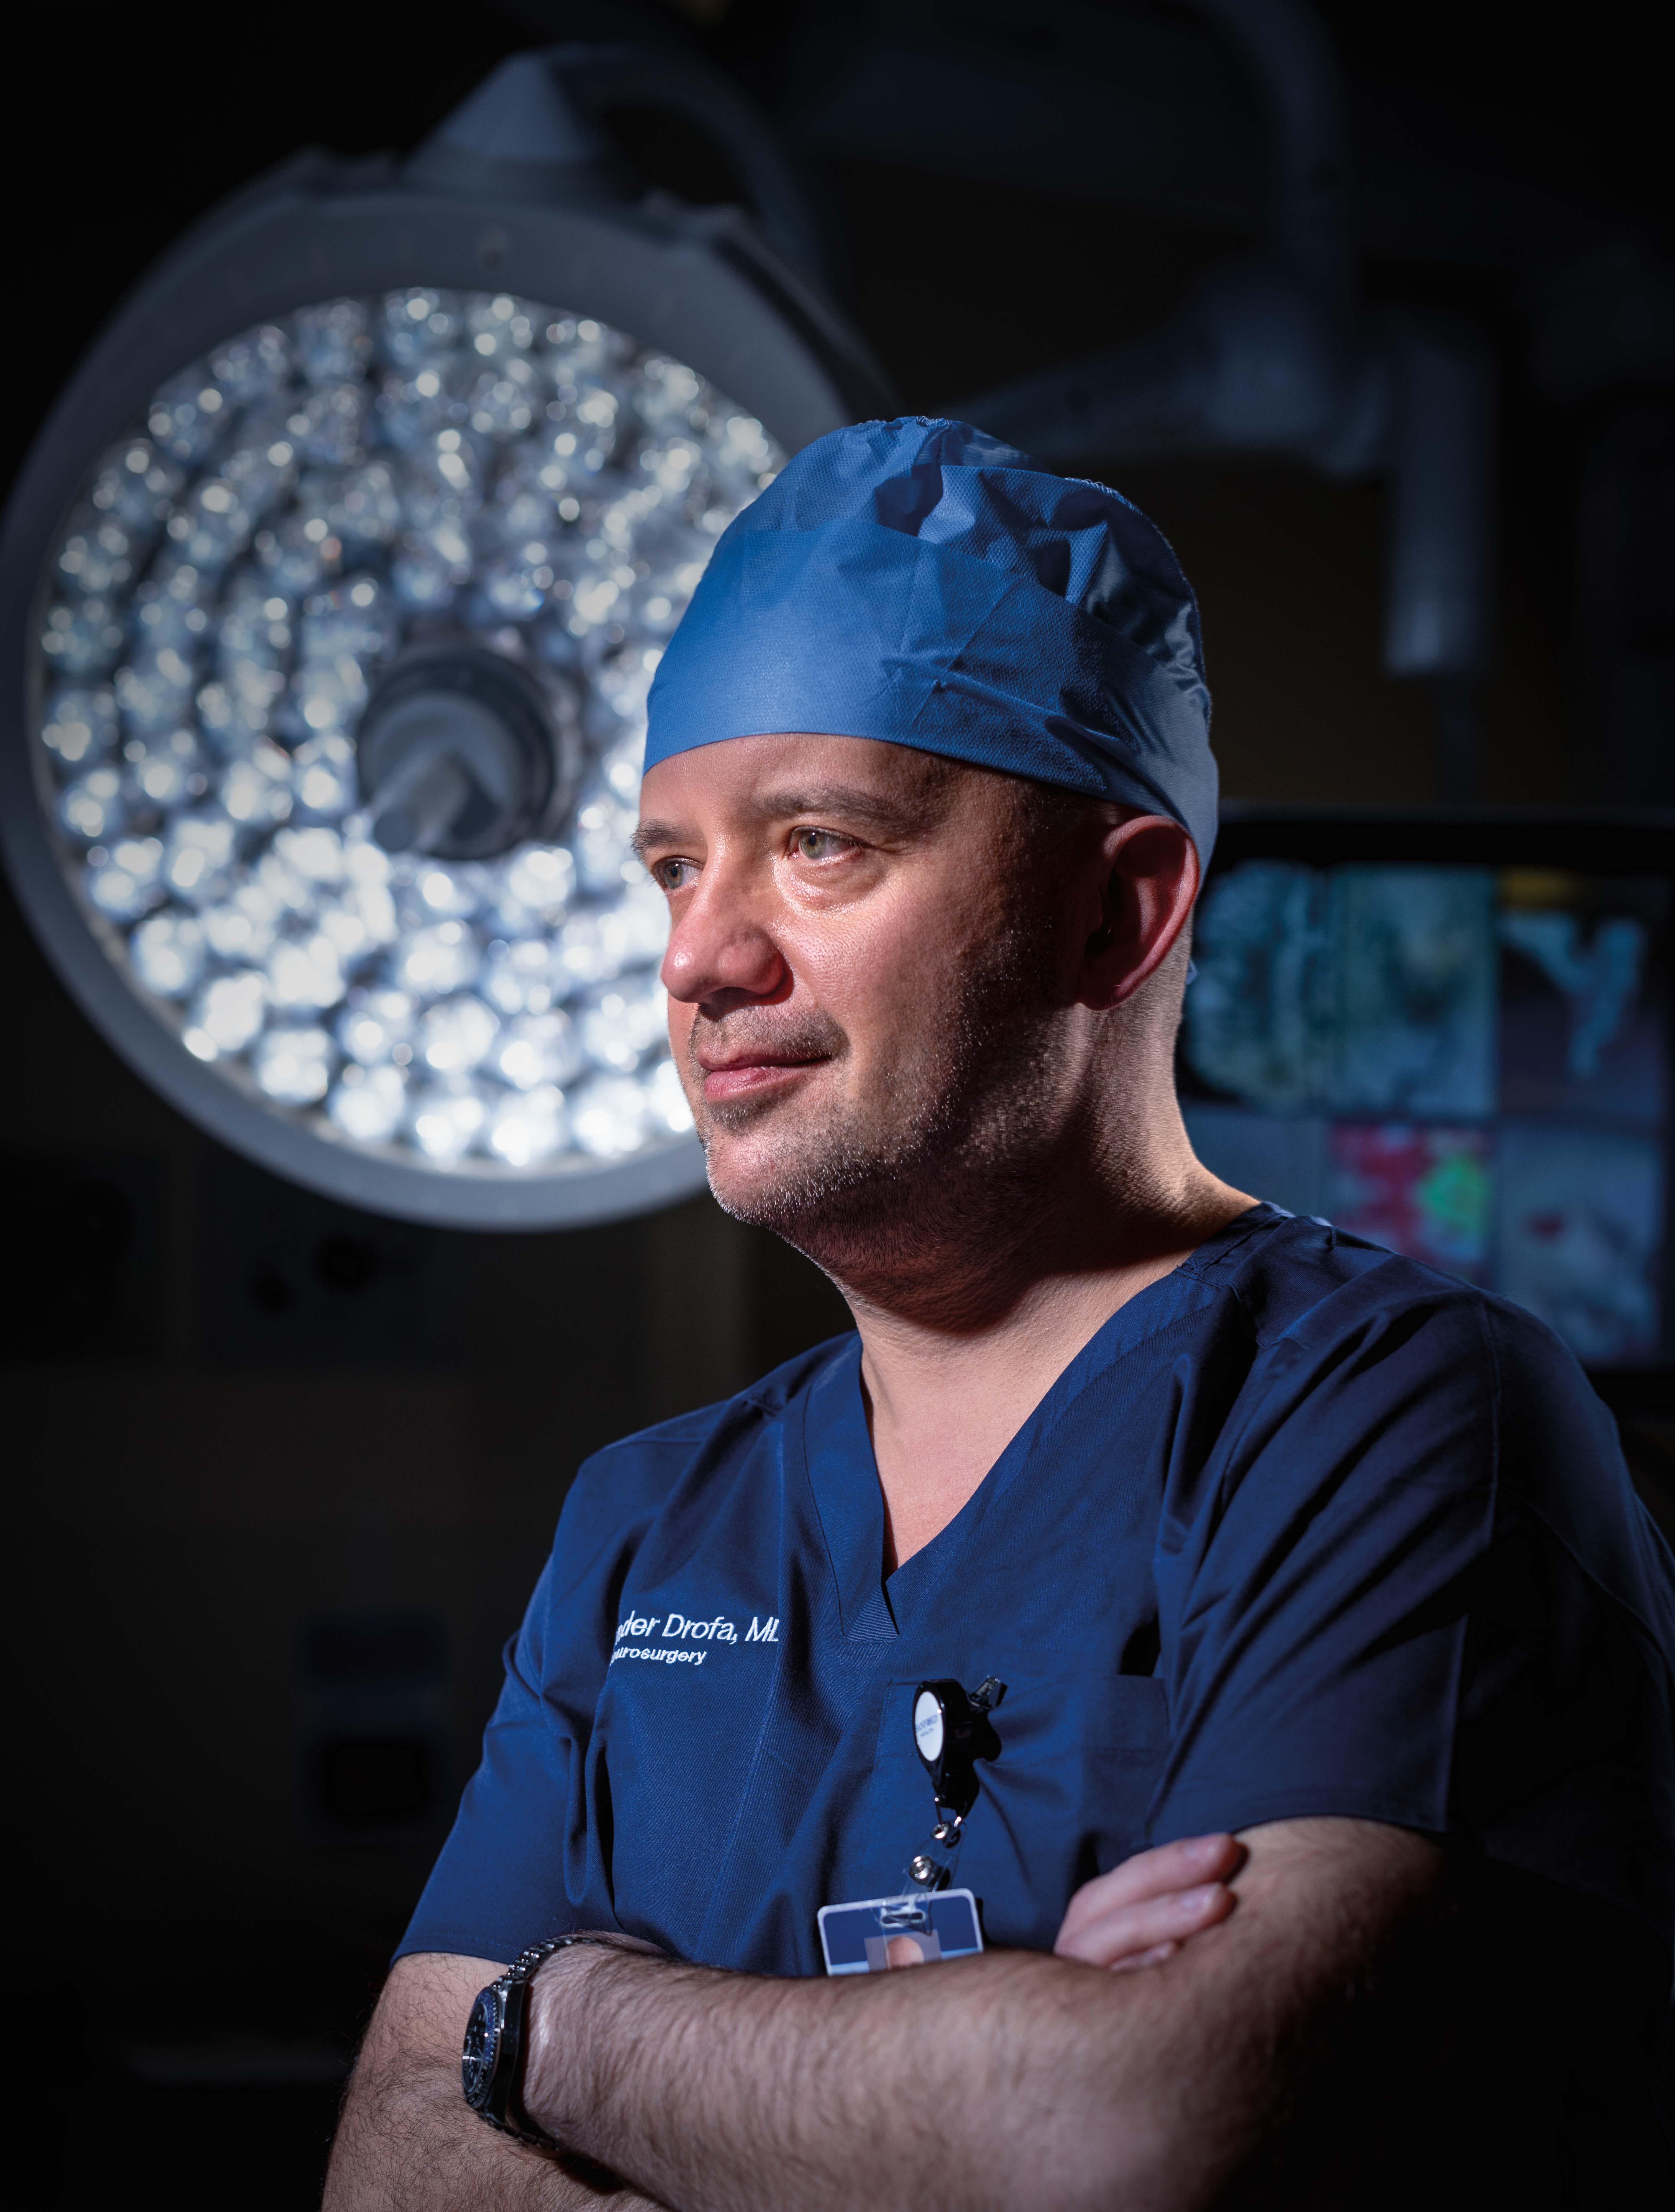 Dr. Drofa posing in an operating room